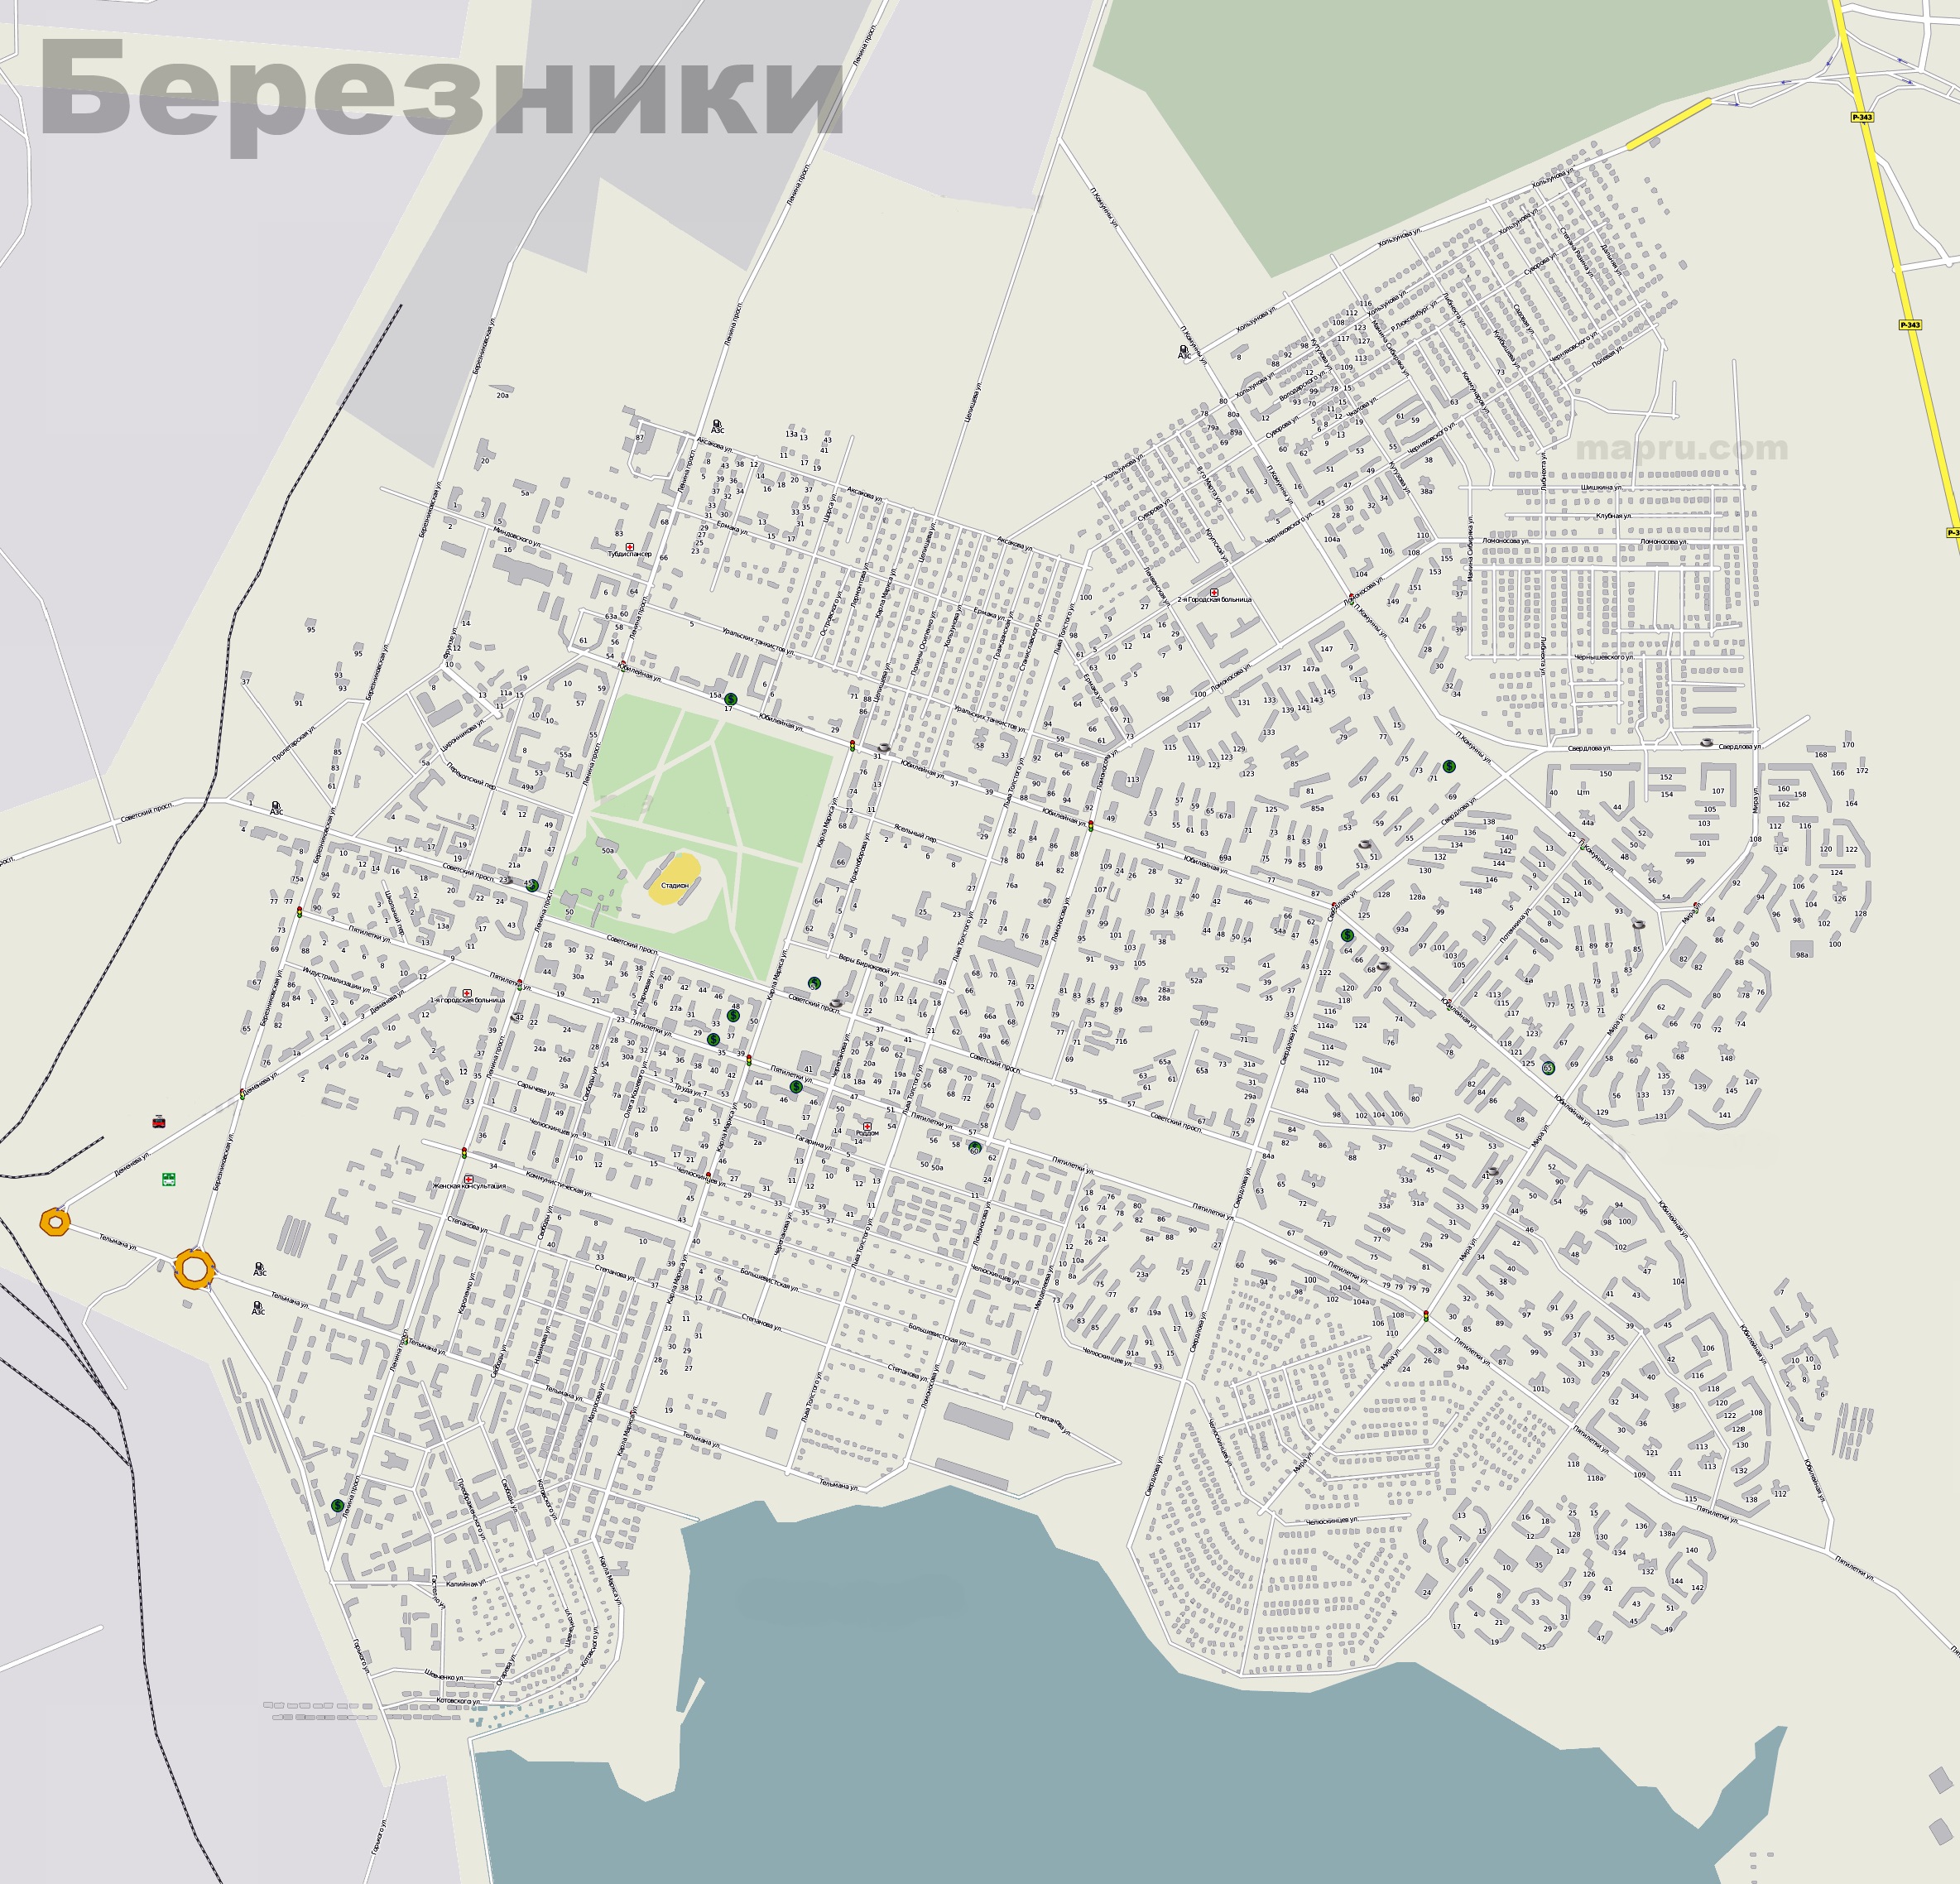 Карта Пермского края (Россия) на русском языке, расположение на карте мирас городами, метро, центра, районов и округов